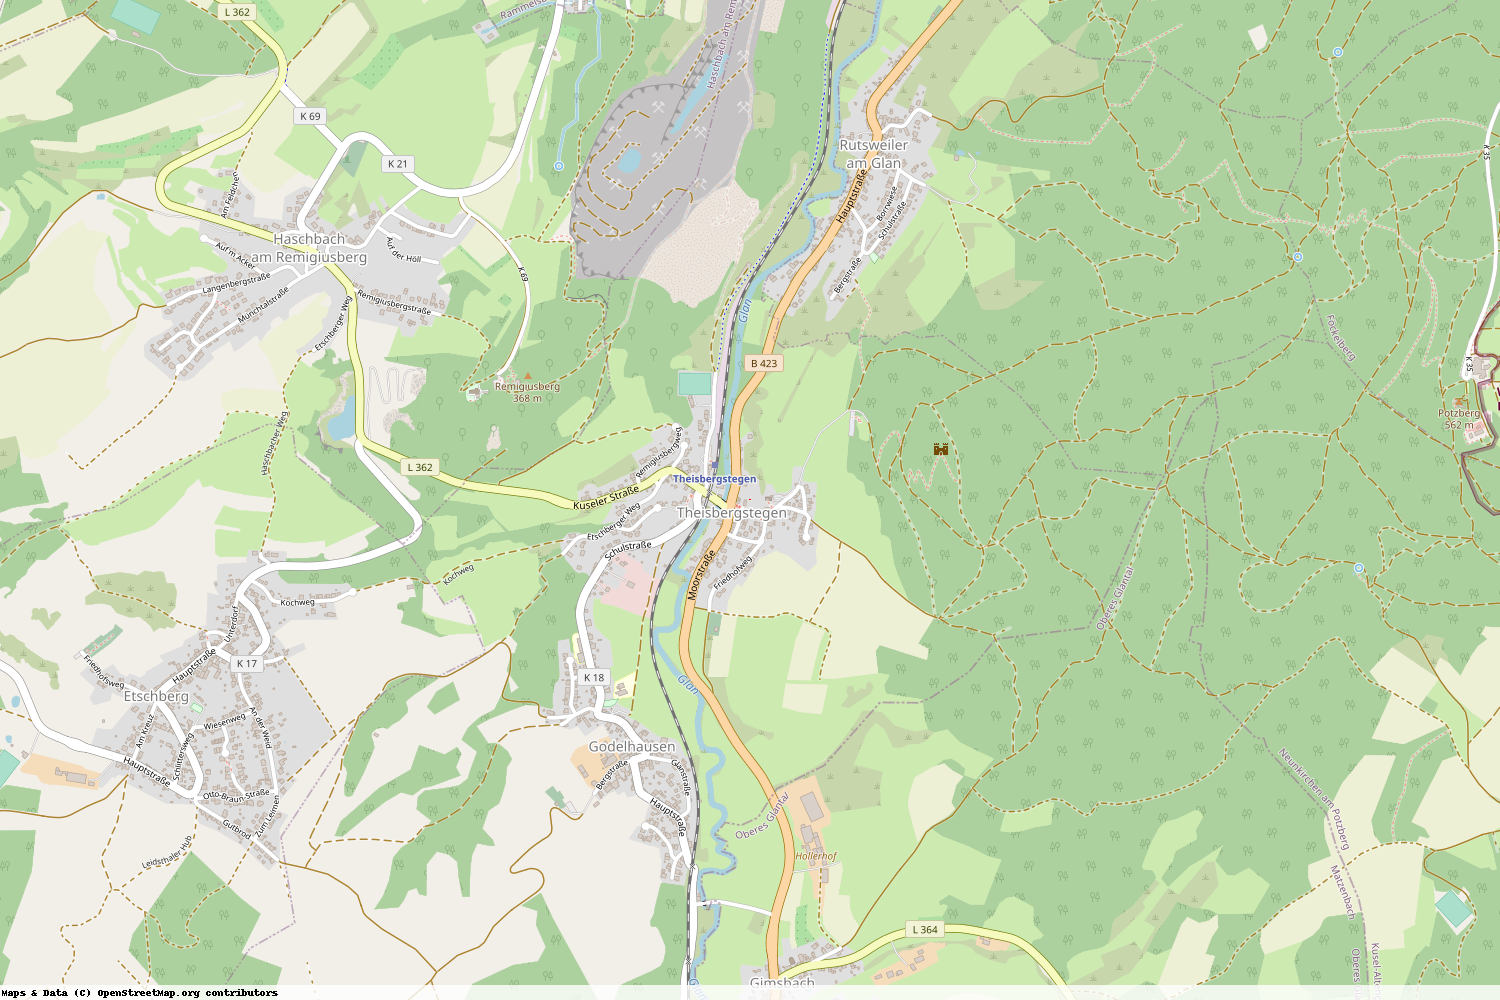 Ist gerade Stromausfall in Rheinland-Pfalz - Kusel - Theisbergstegen?